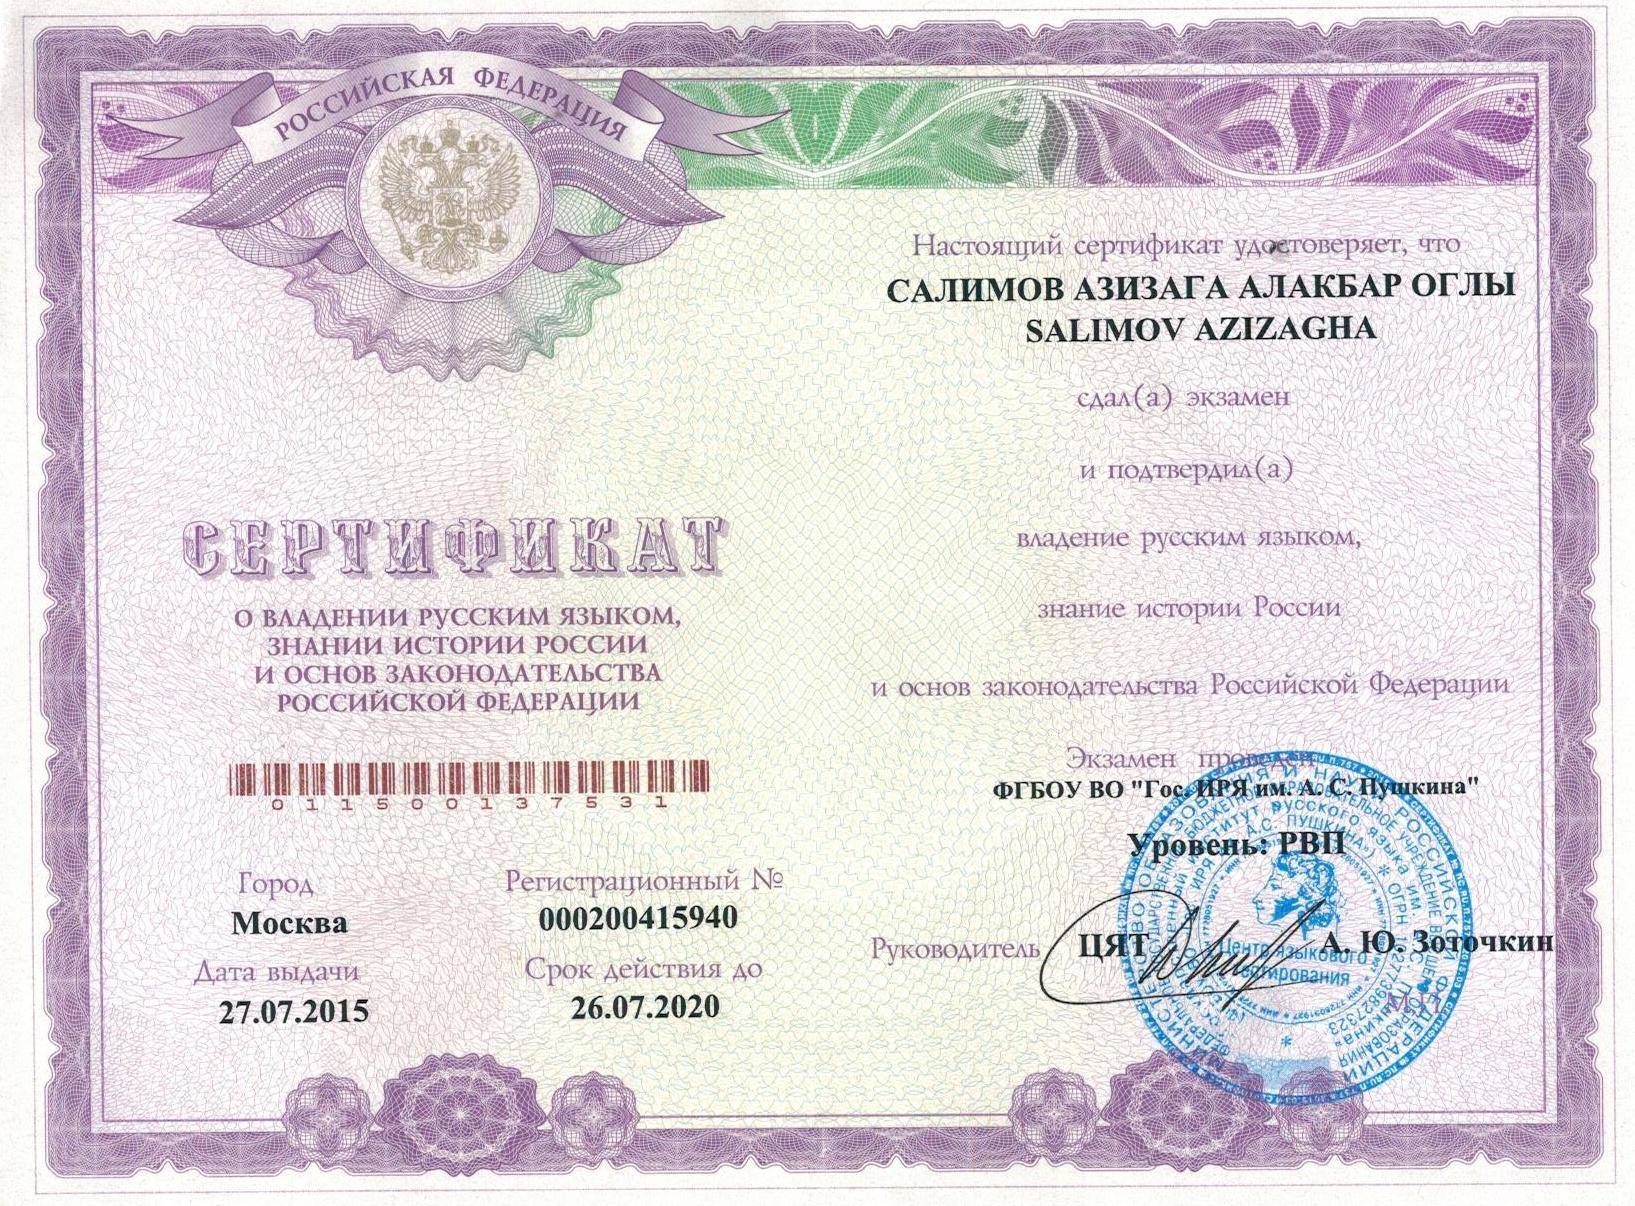 Как проходит экзамен на гражданство рф по русскому языку? – мигранту рус